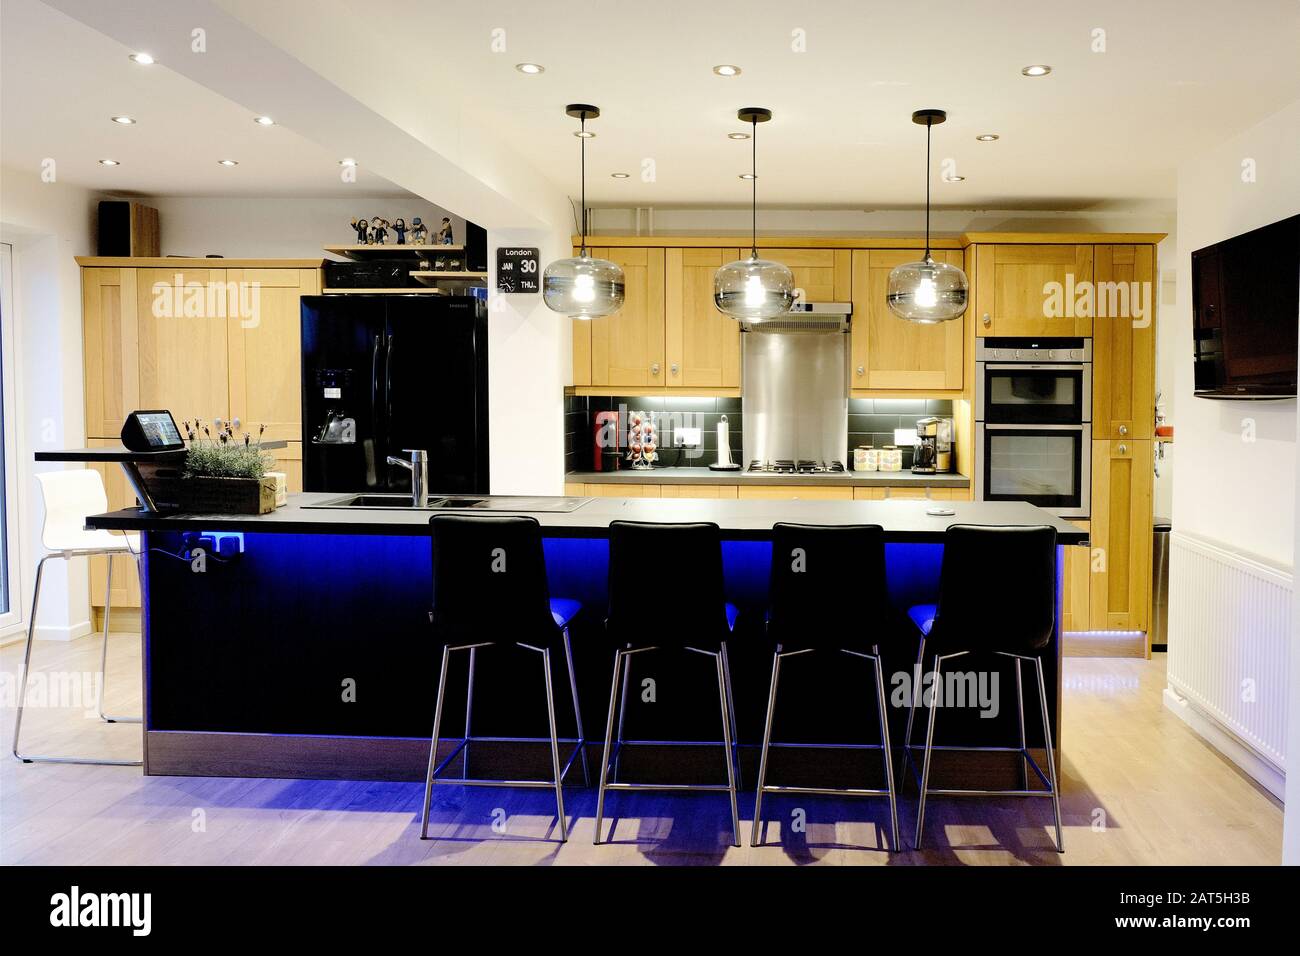 Una cucina moderna ed elegante in una casa moderna, britannica, caratterizzata da una grande isola con sgabelli da bar e unita' di cucina in legno. La cucina è illuminata. Foto Stock